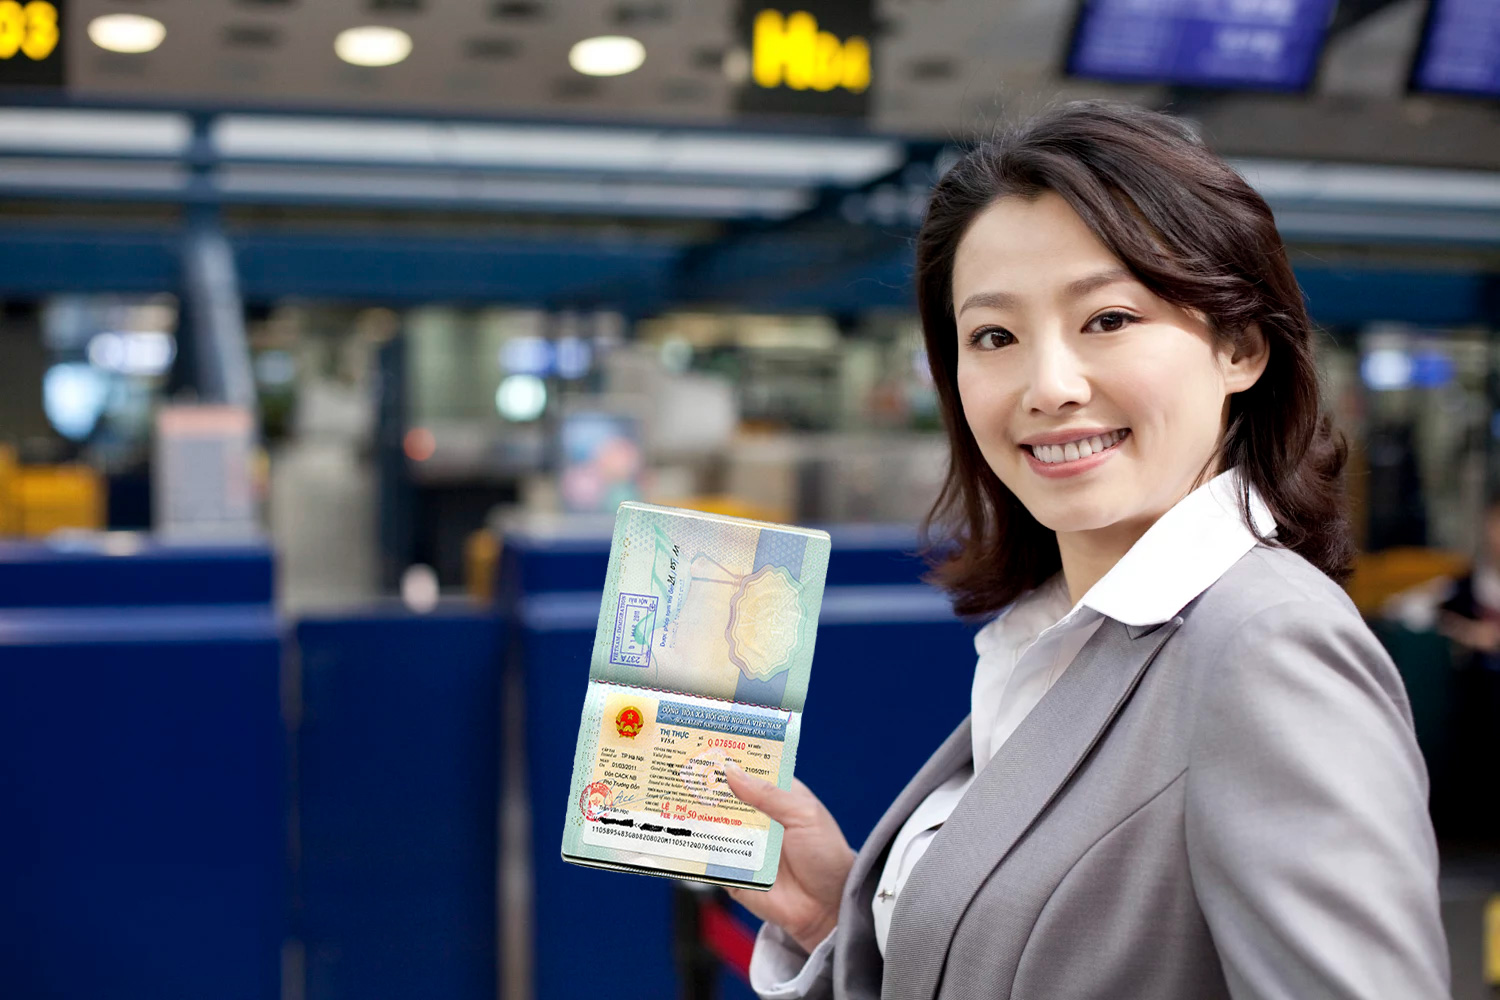 أفضل 10 مراجعات لتأشيرة فيتنام الإلكترونية